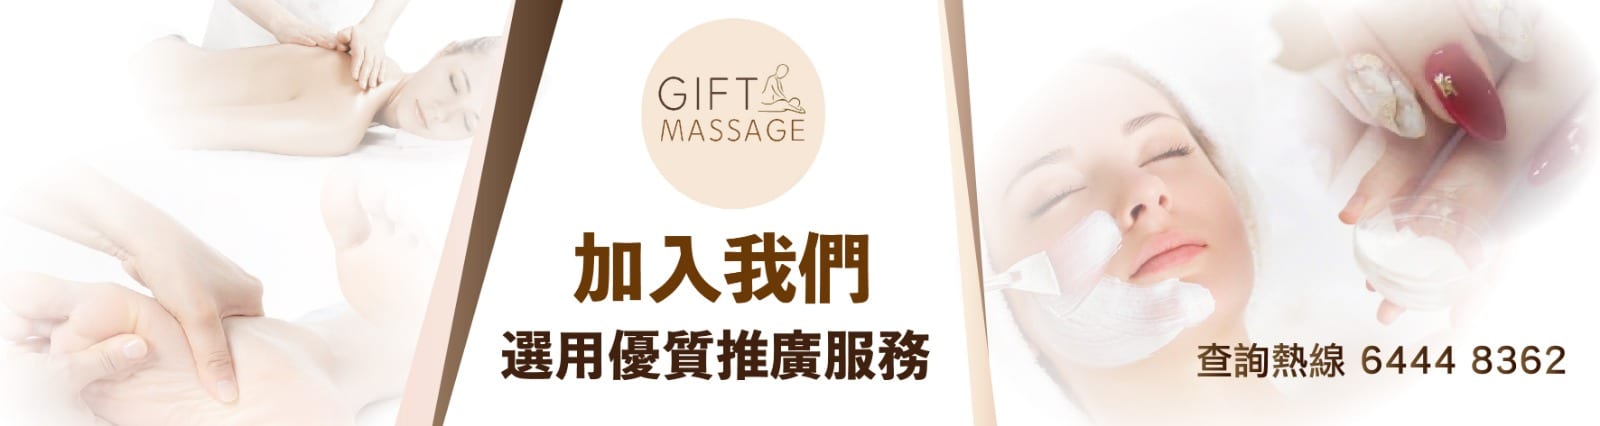 賣廣告 gift massage and beauty 按摩 美容